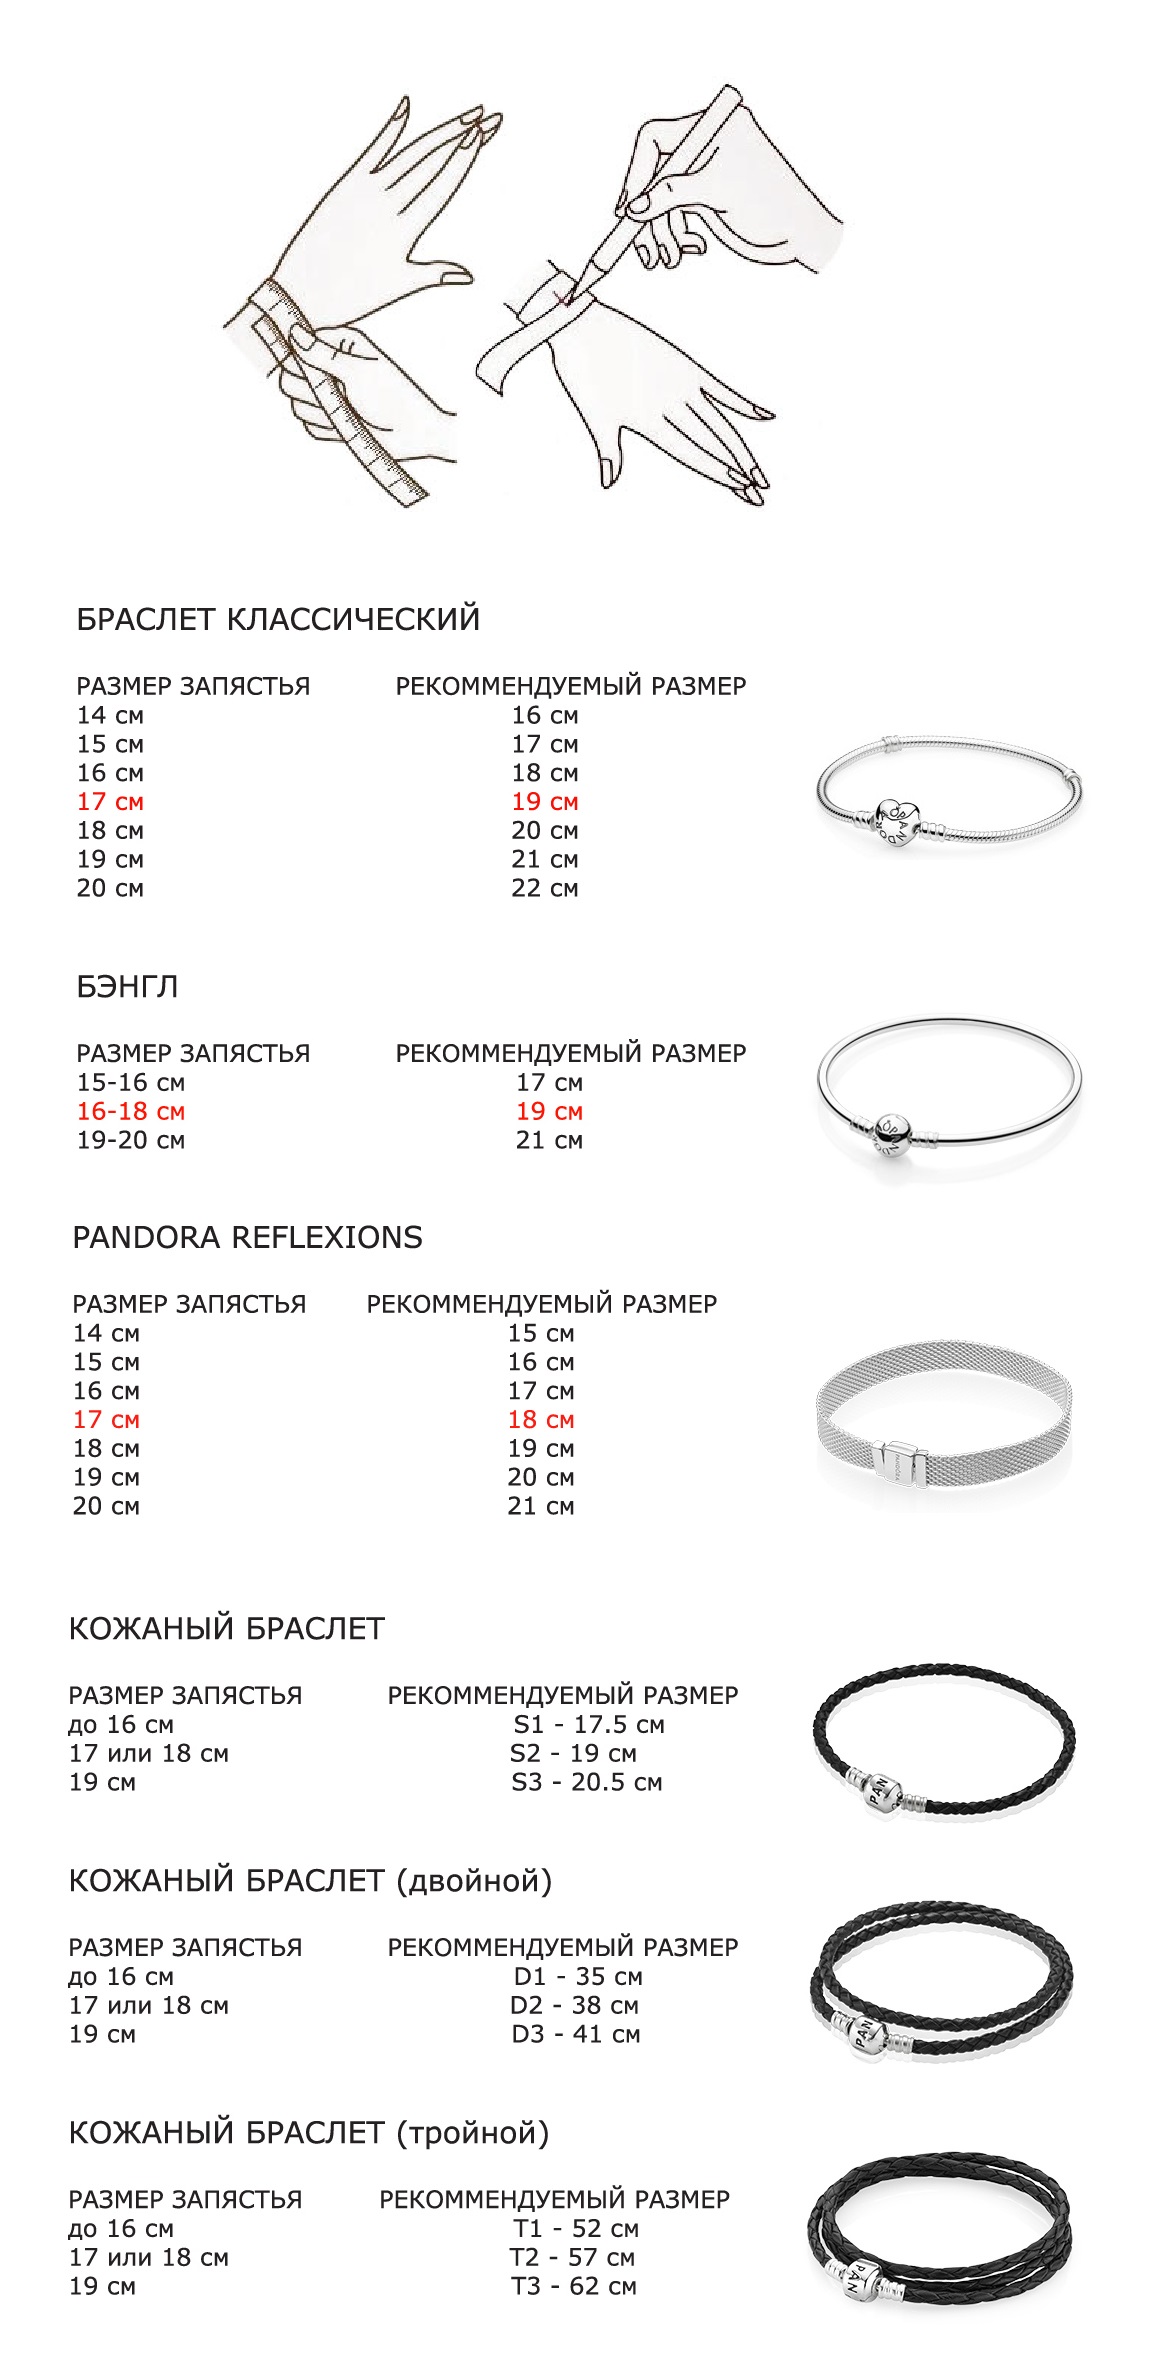 Размеры мужских браслетов: как узнать размер браслета на руку мужчине? таблица размеров. как выбрать верный?